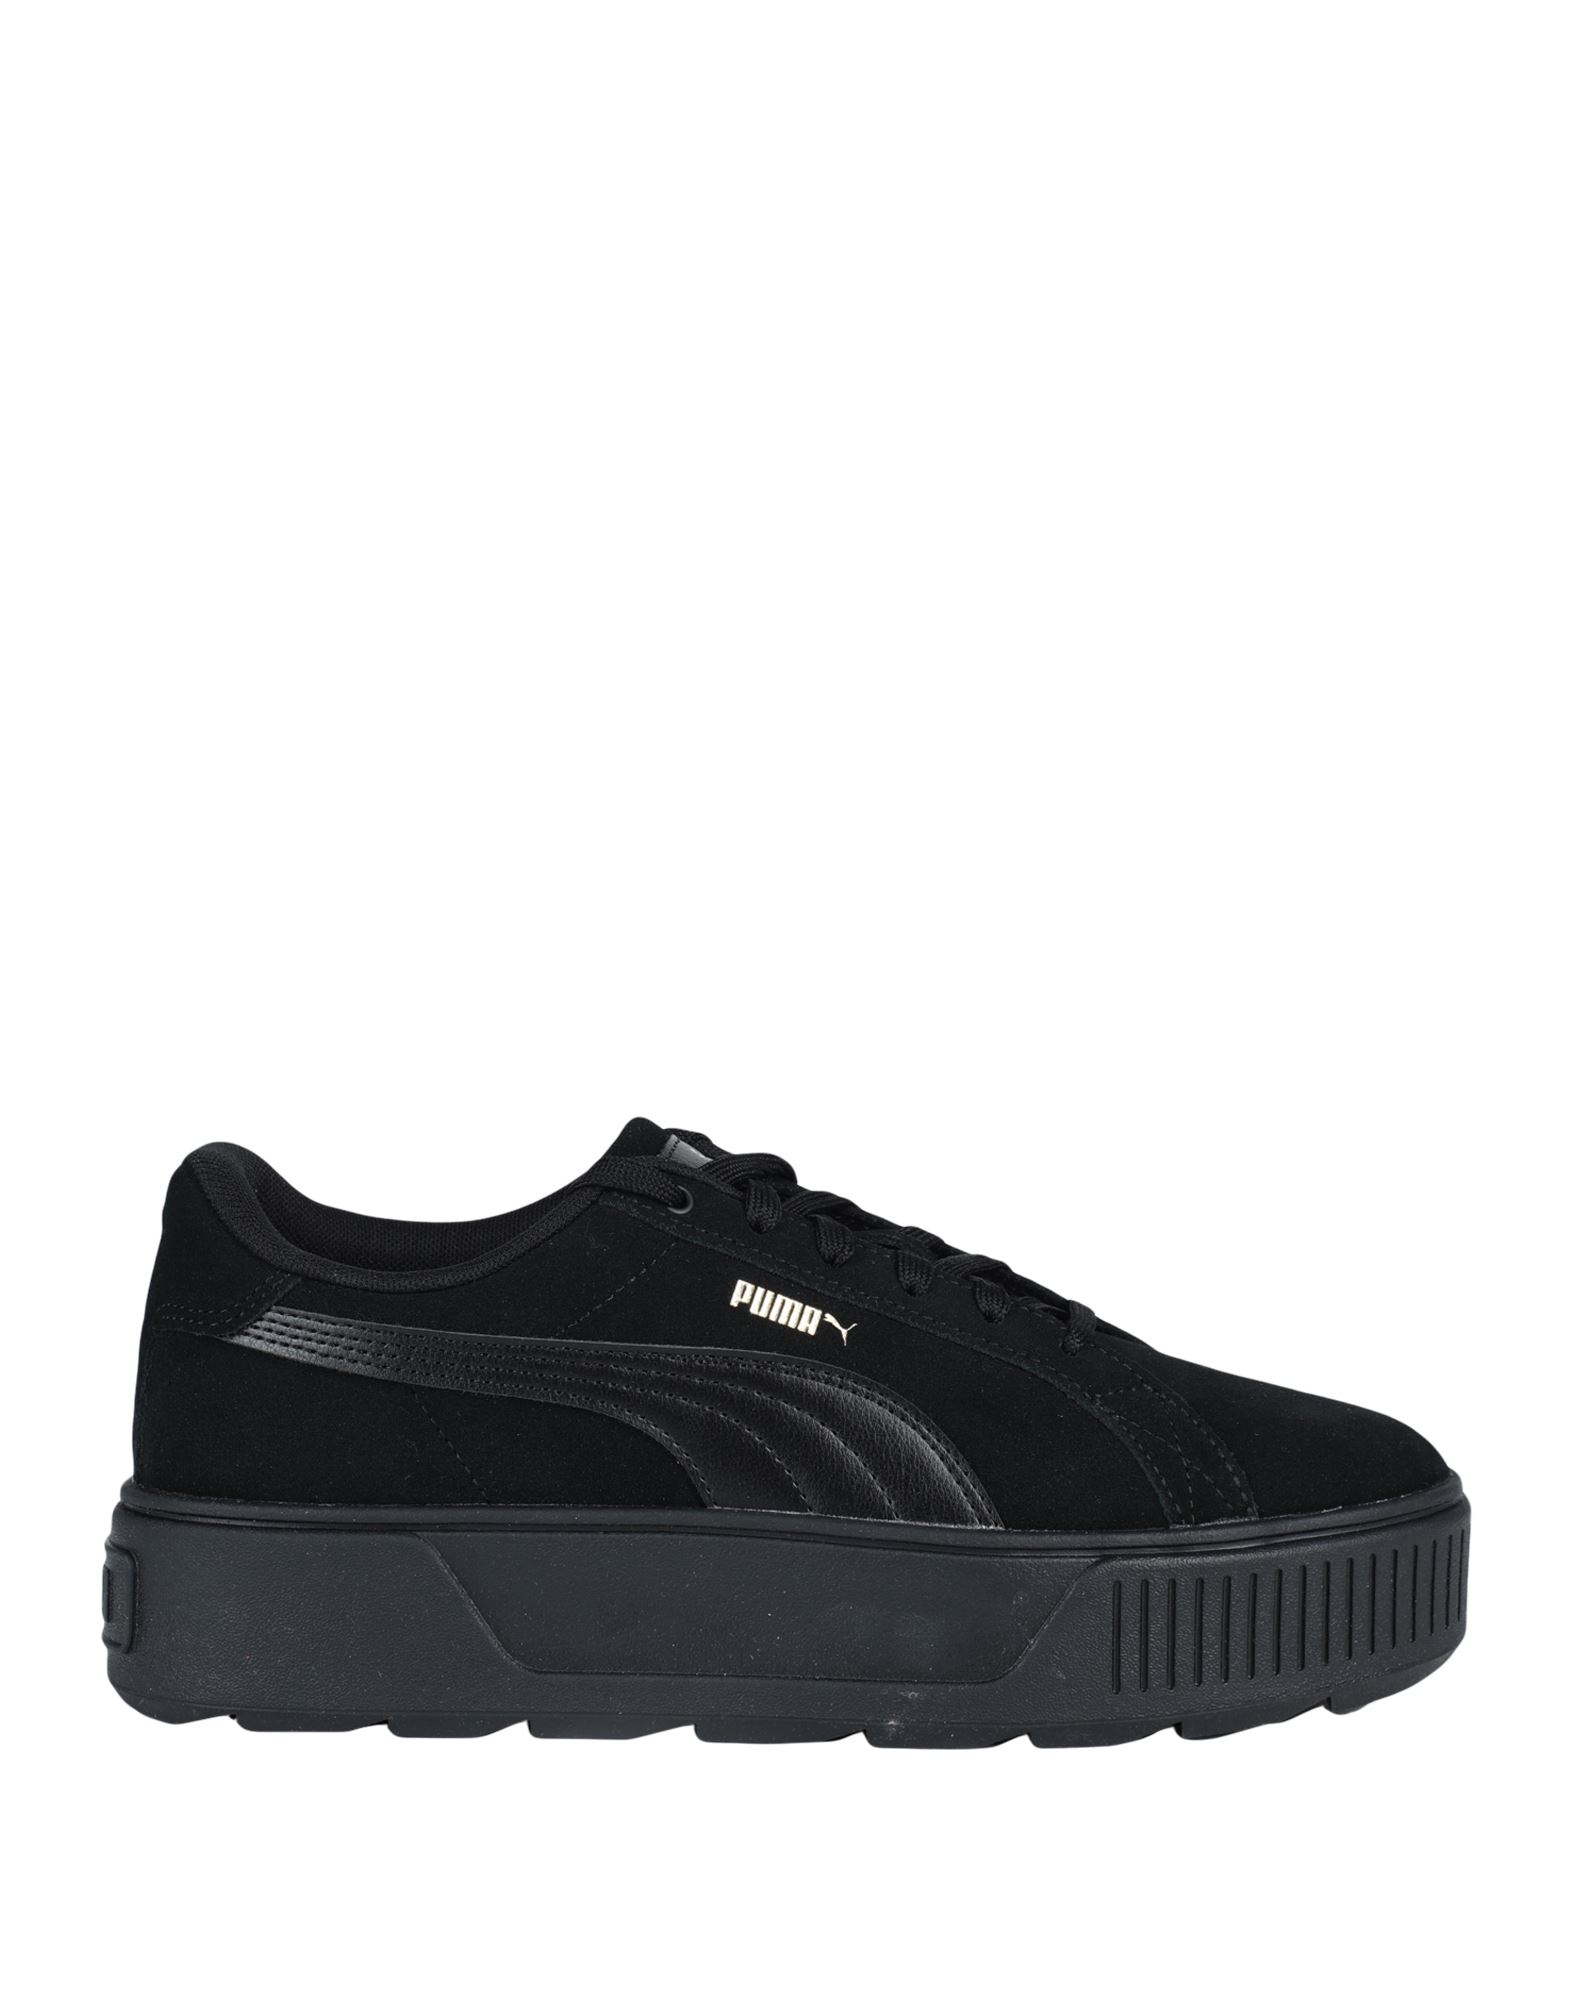 Shop Puma Karmen Woman Sneakers Black Size 7.5 Soft Leather